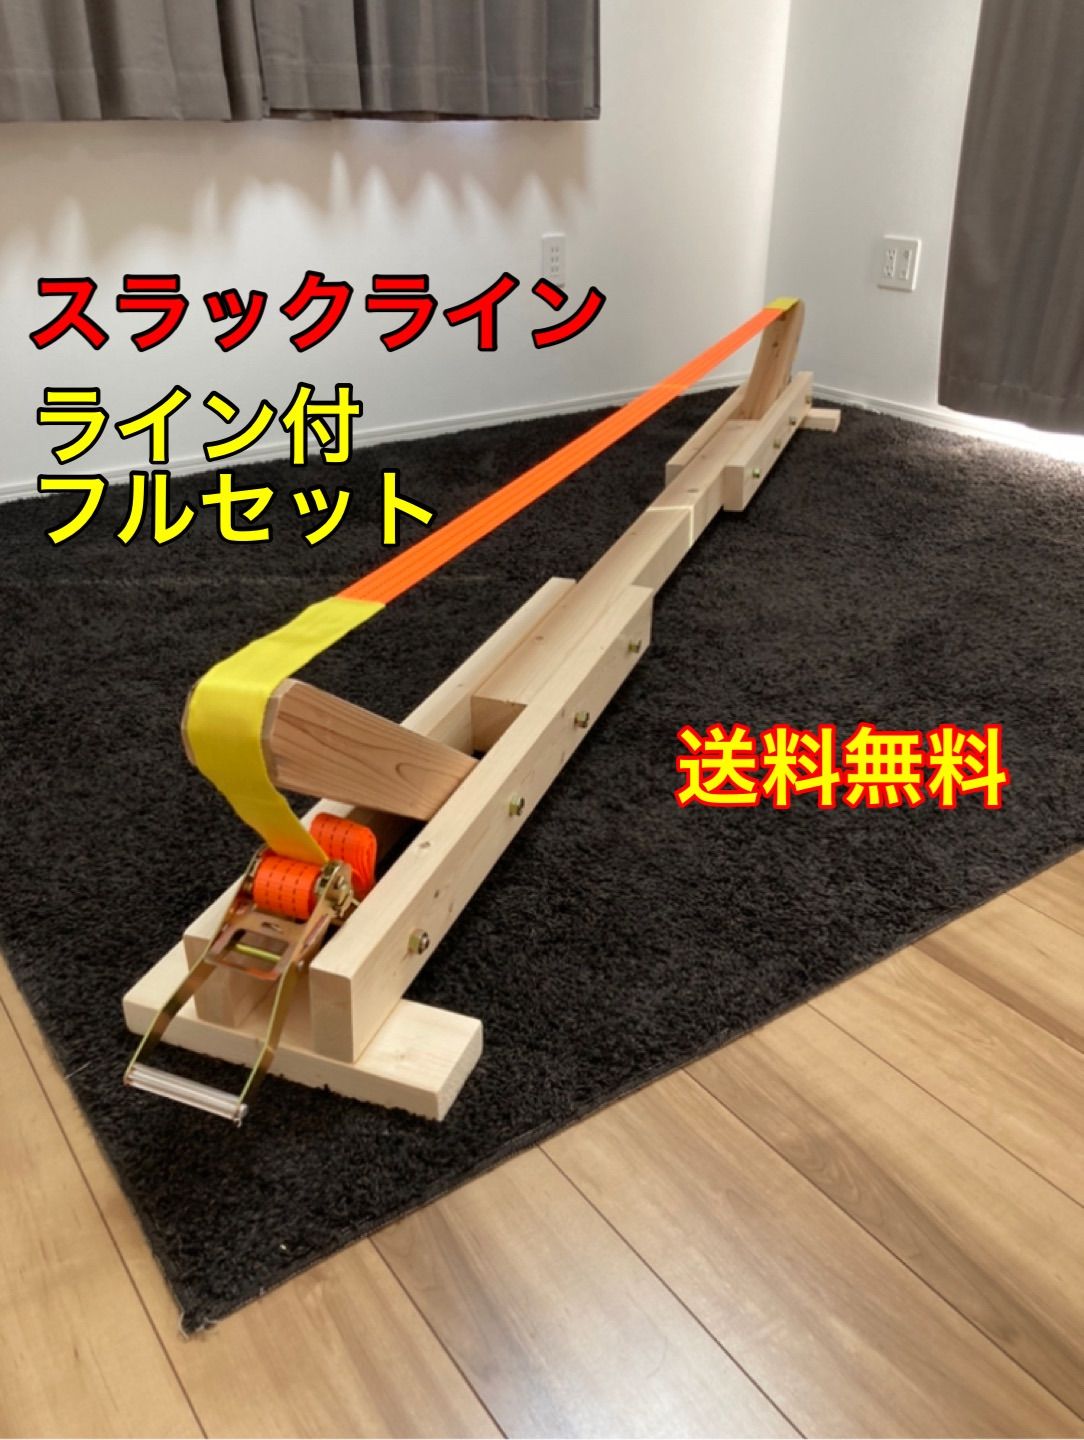 スラックライン スタンド ラック フルセット【1.2〜1.5m】平均台 室内遊具